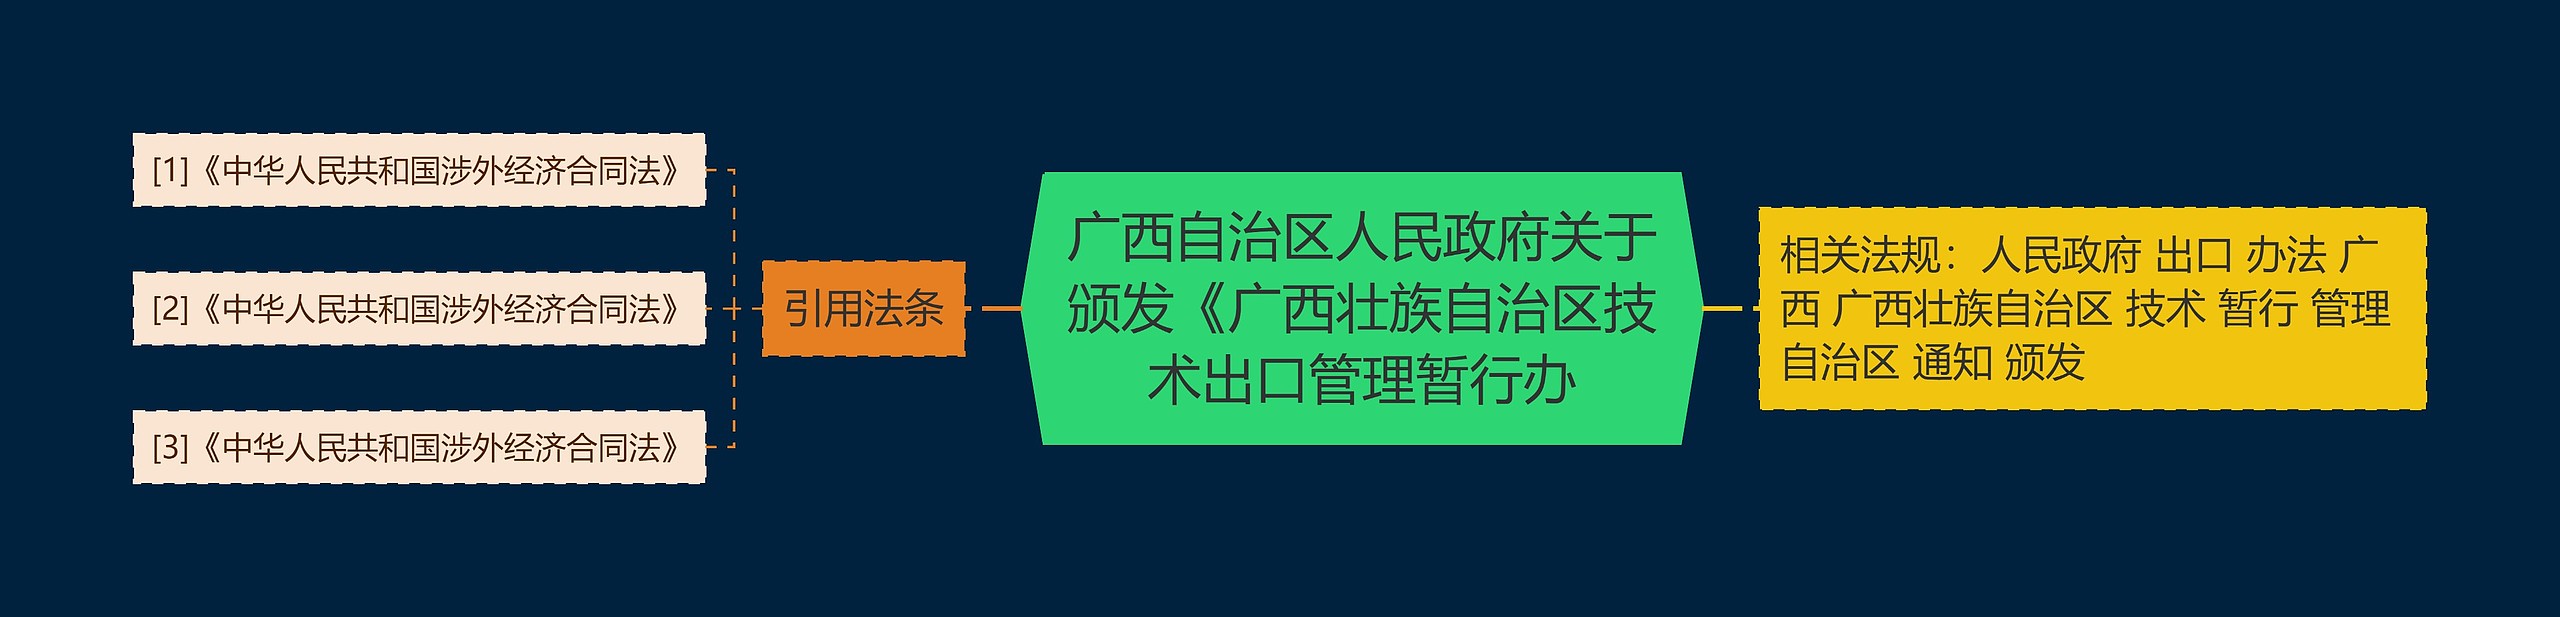 广西自治区人民政府关于颁发《广西壮族自治区技术出口管理暂行办